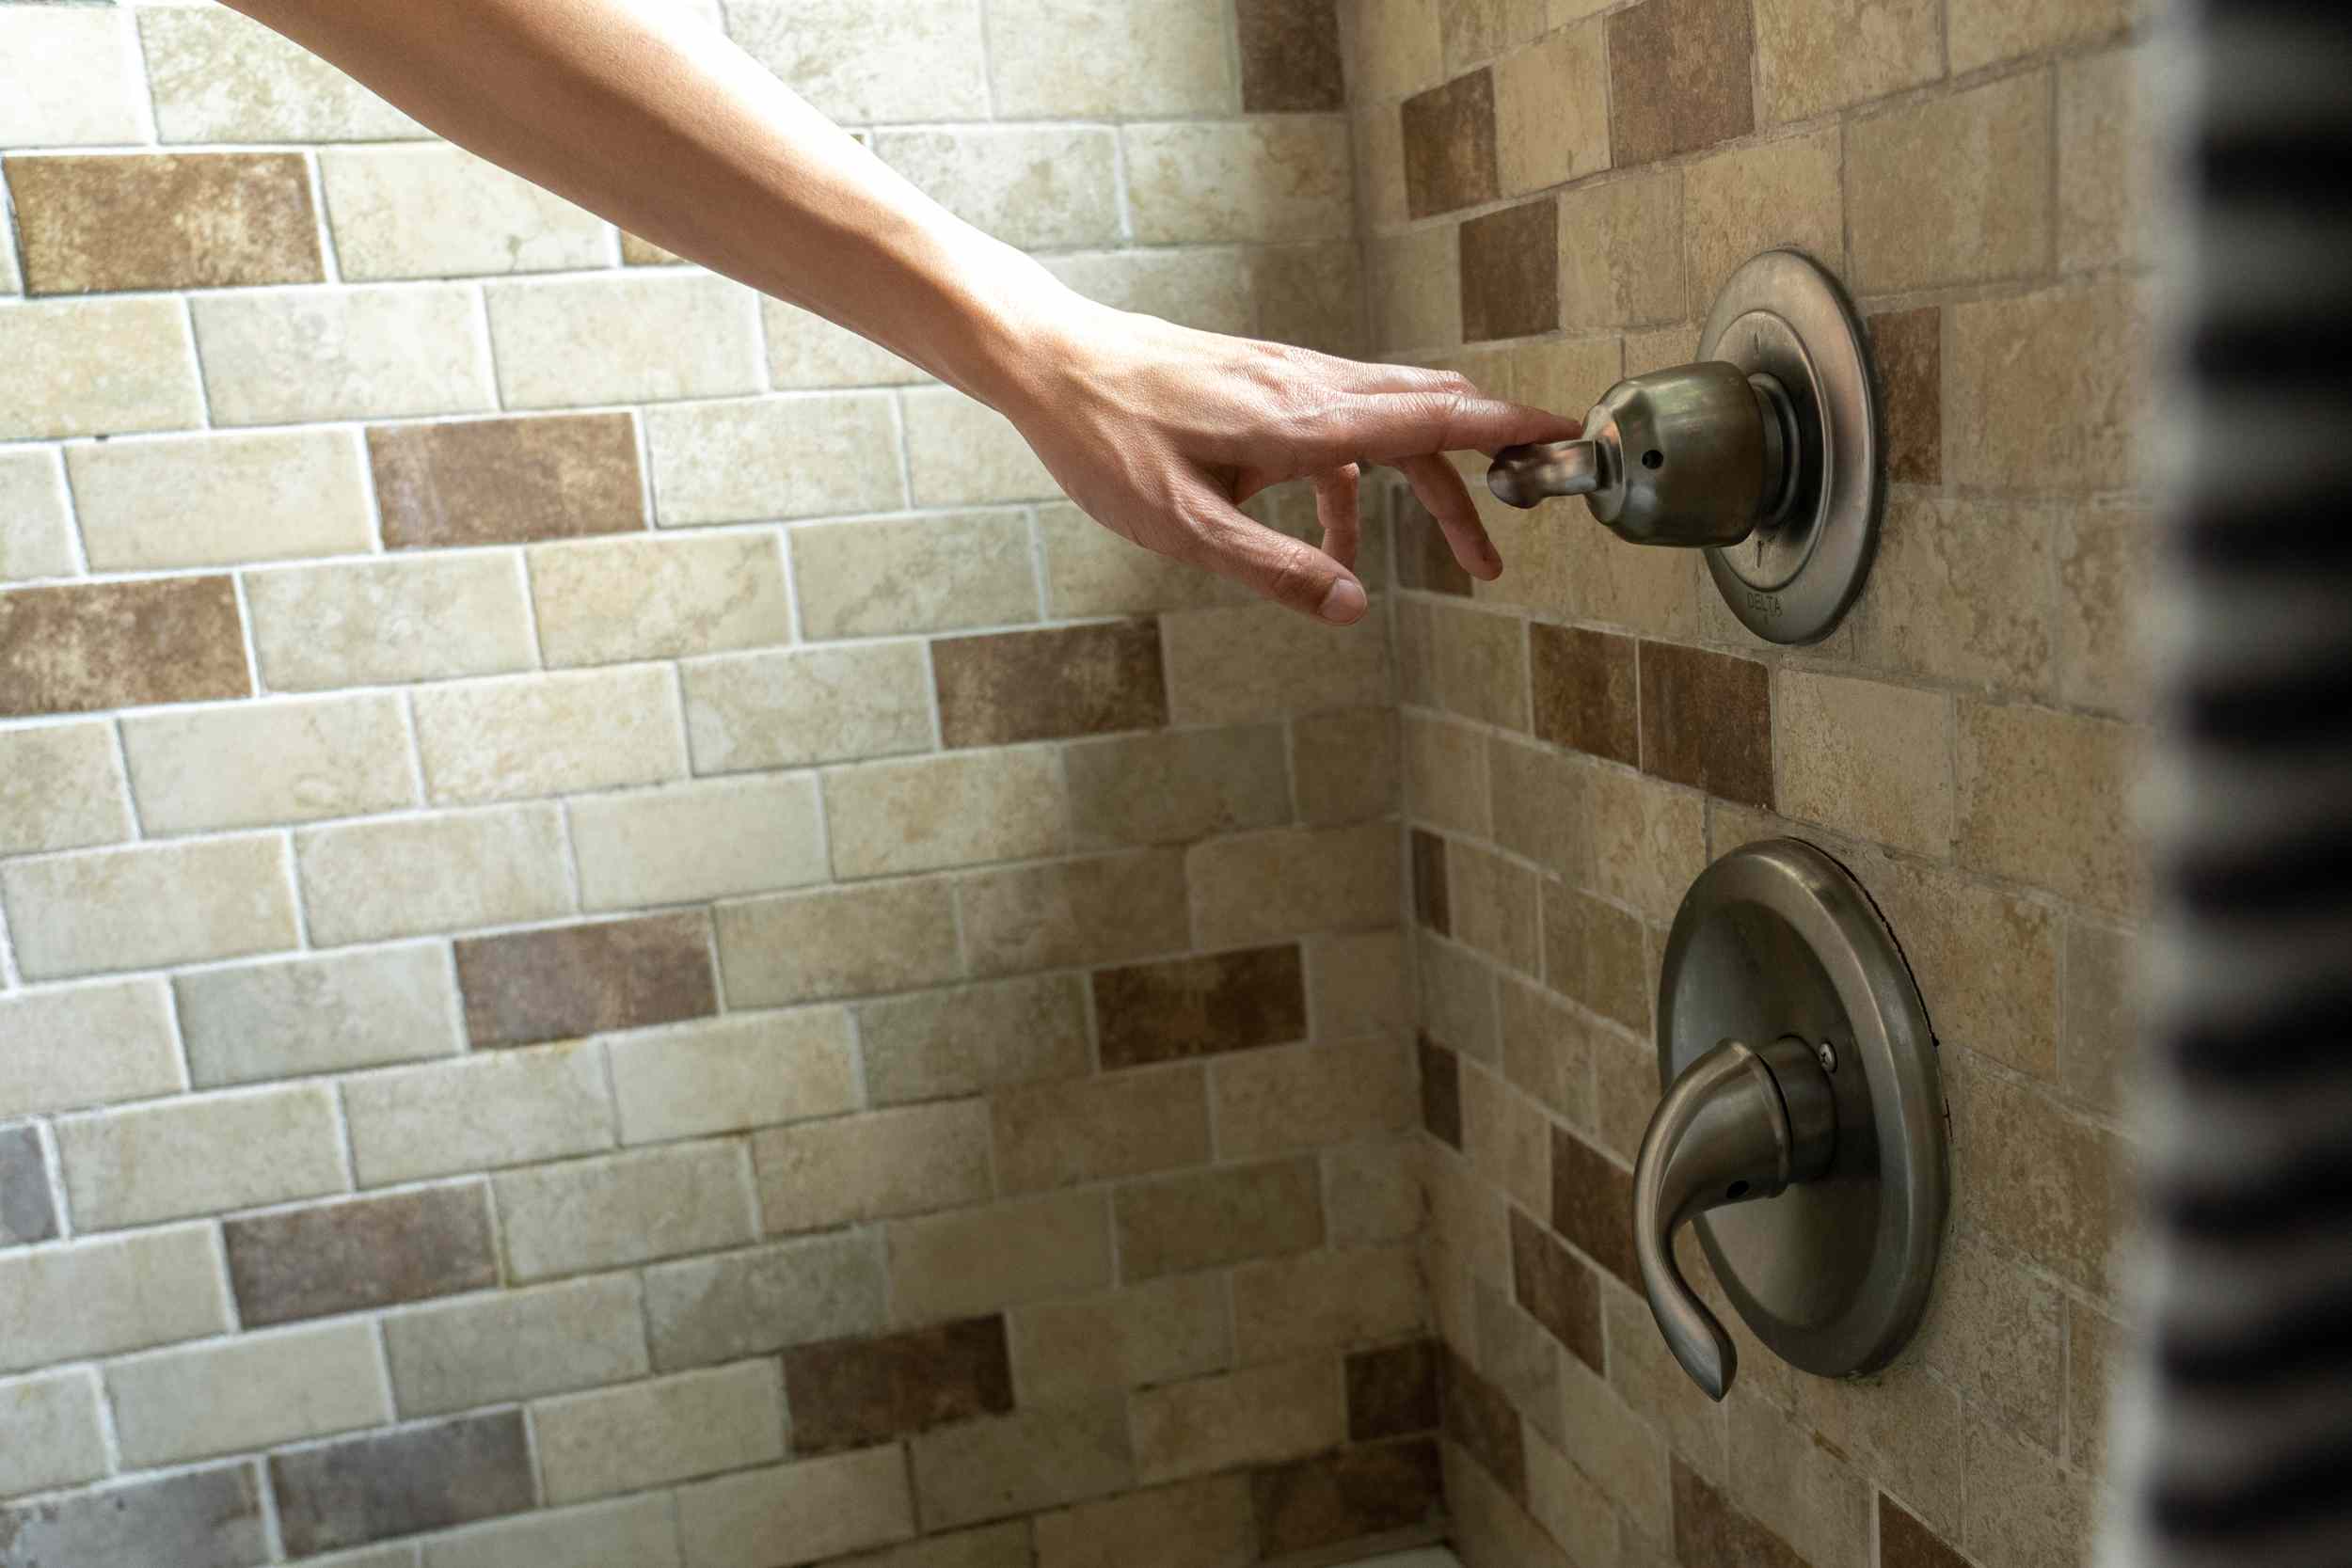 la mano se extiende para bajar la temperatura del agua en la ducha